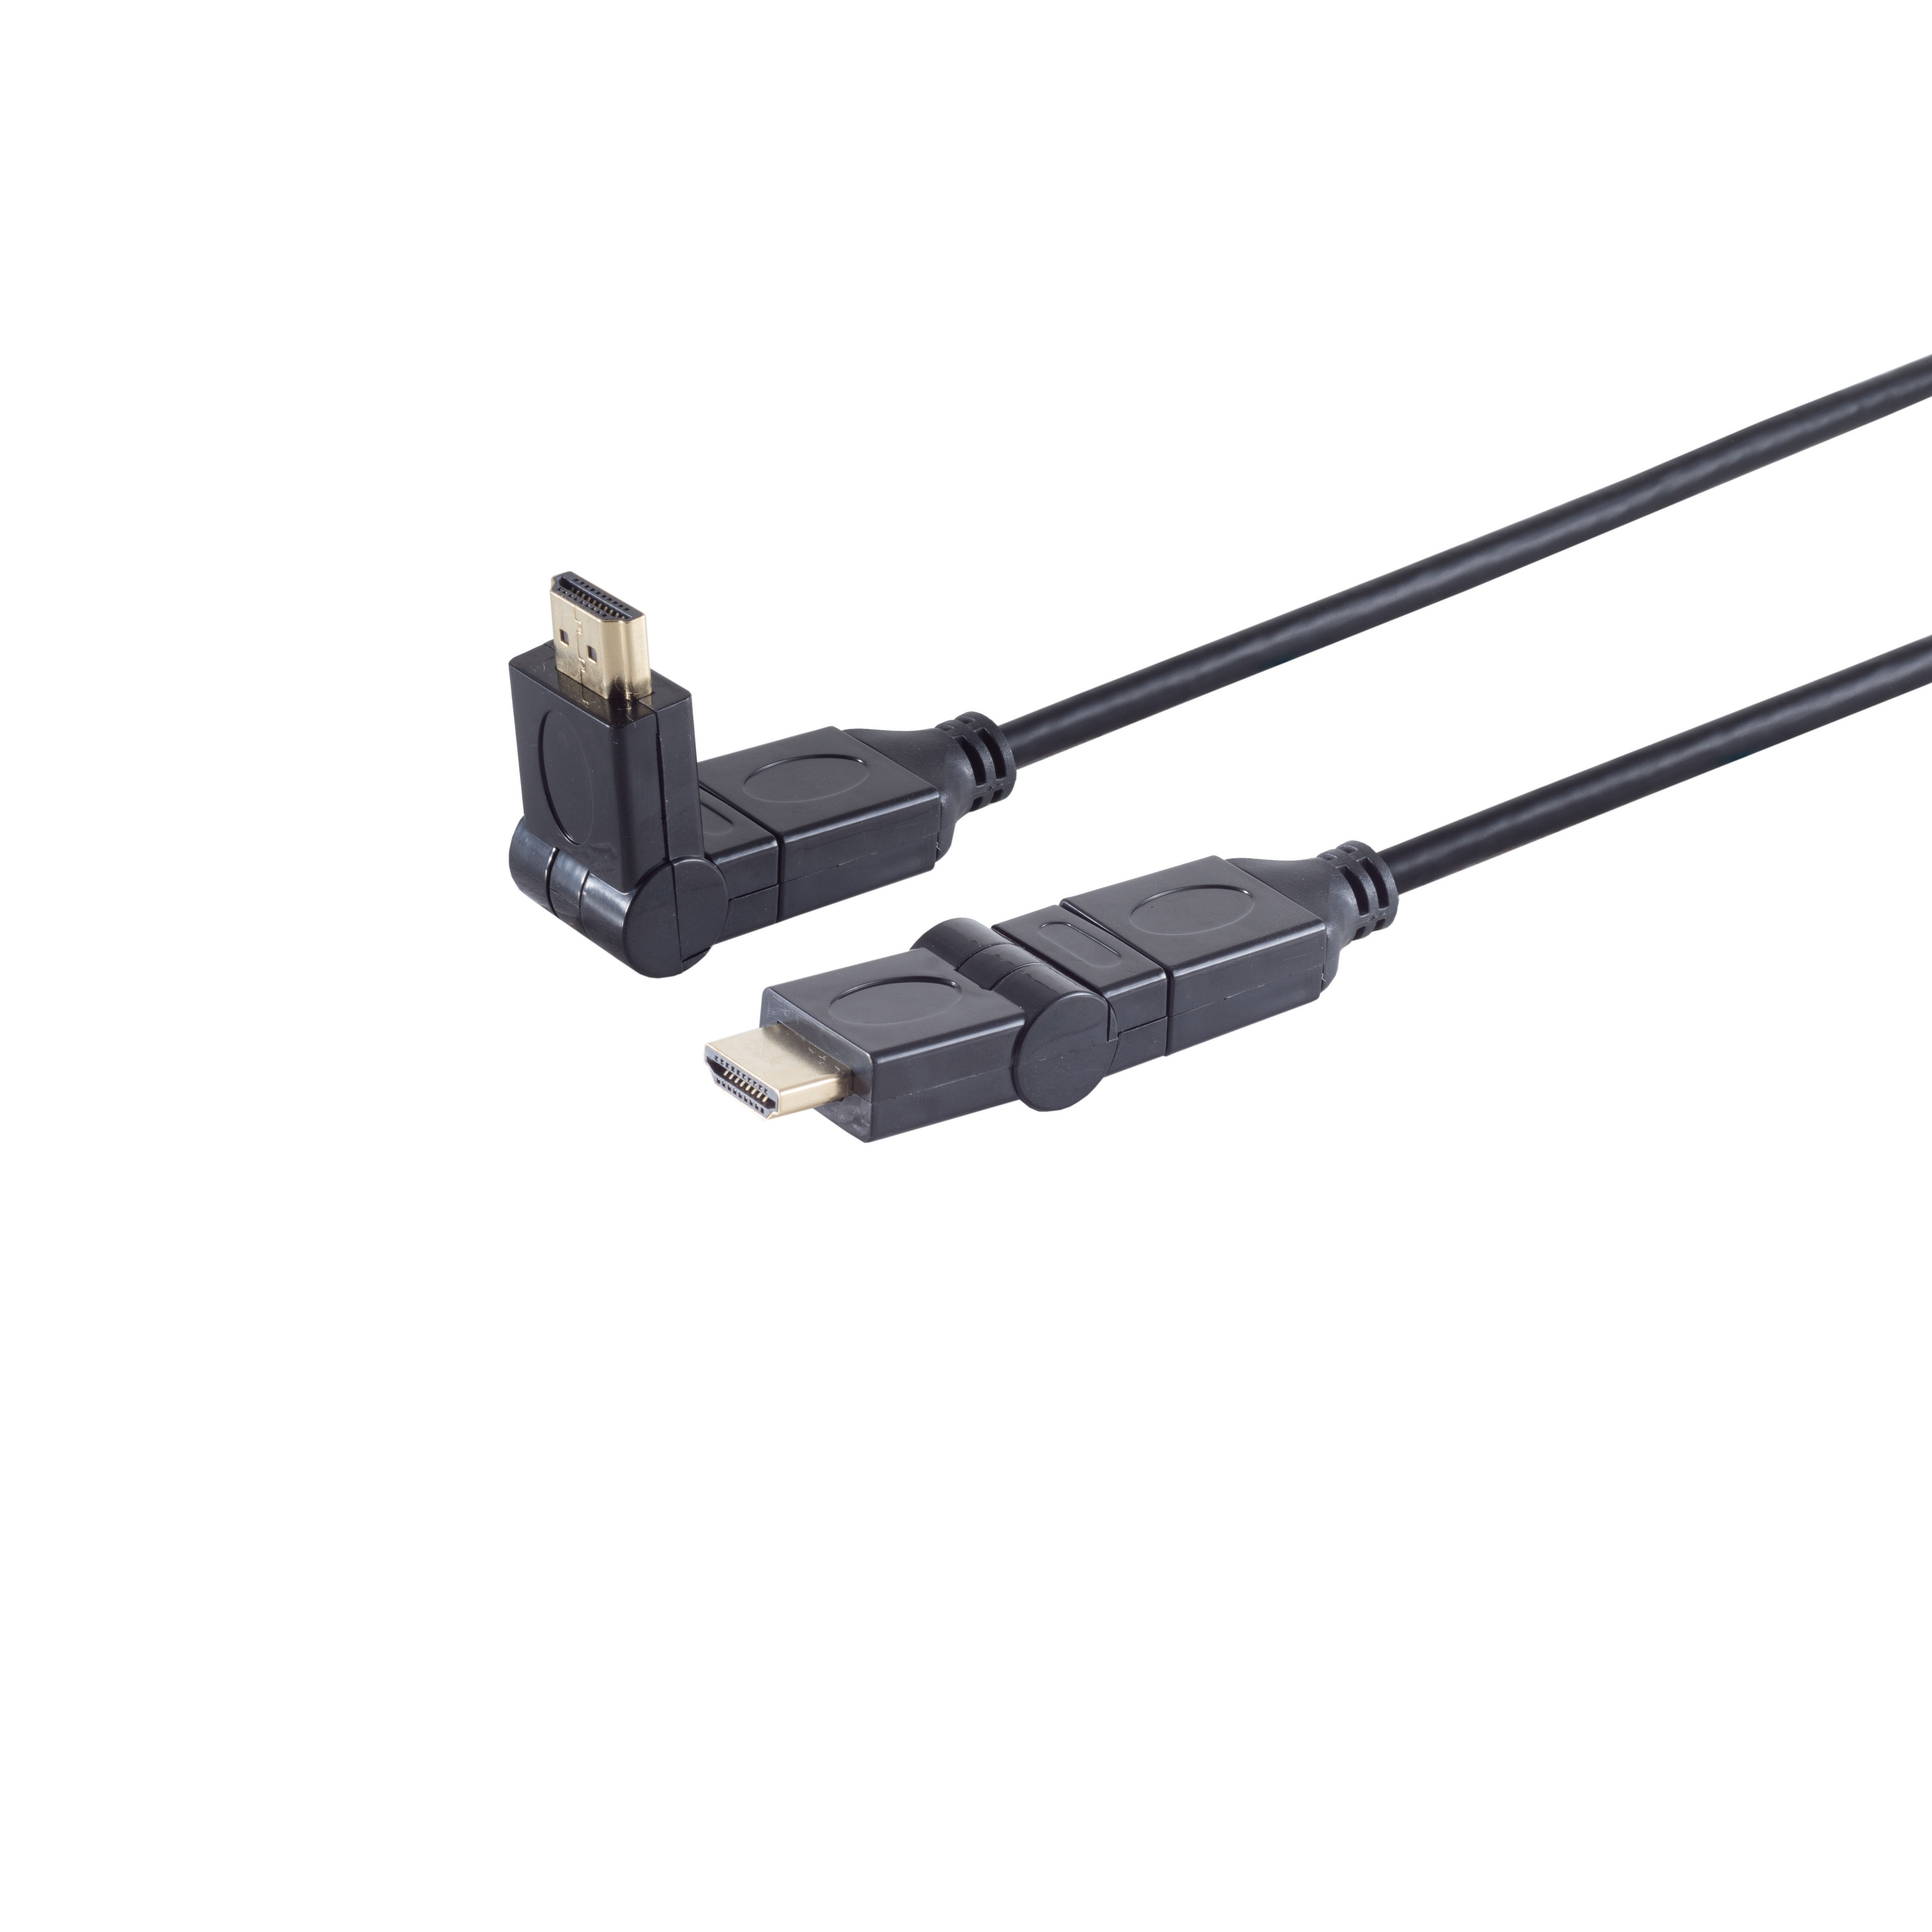 CONNECTIVITY A-Stecker/HDMI HDMI A-Stecker S/CONN winkelbar HEAC Kabel HDMI 2m MAXIMUM